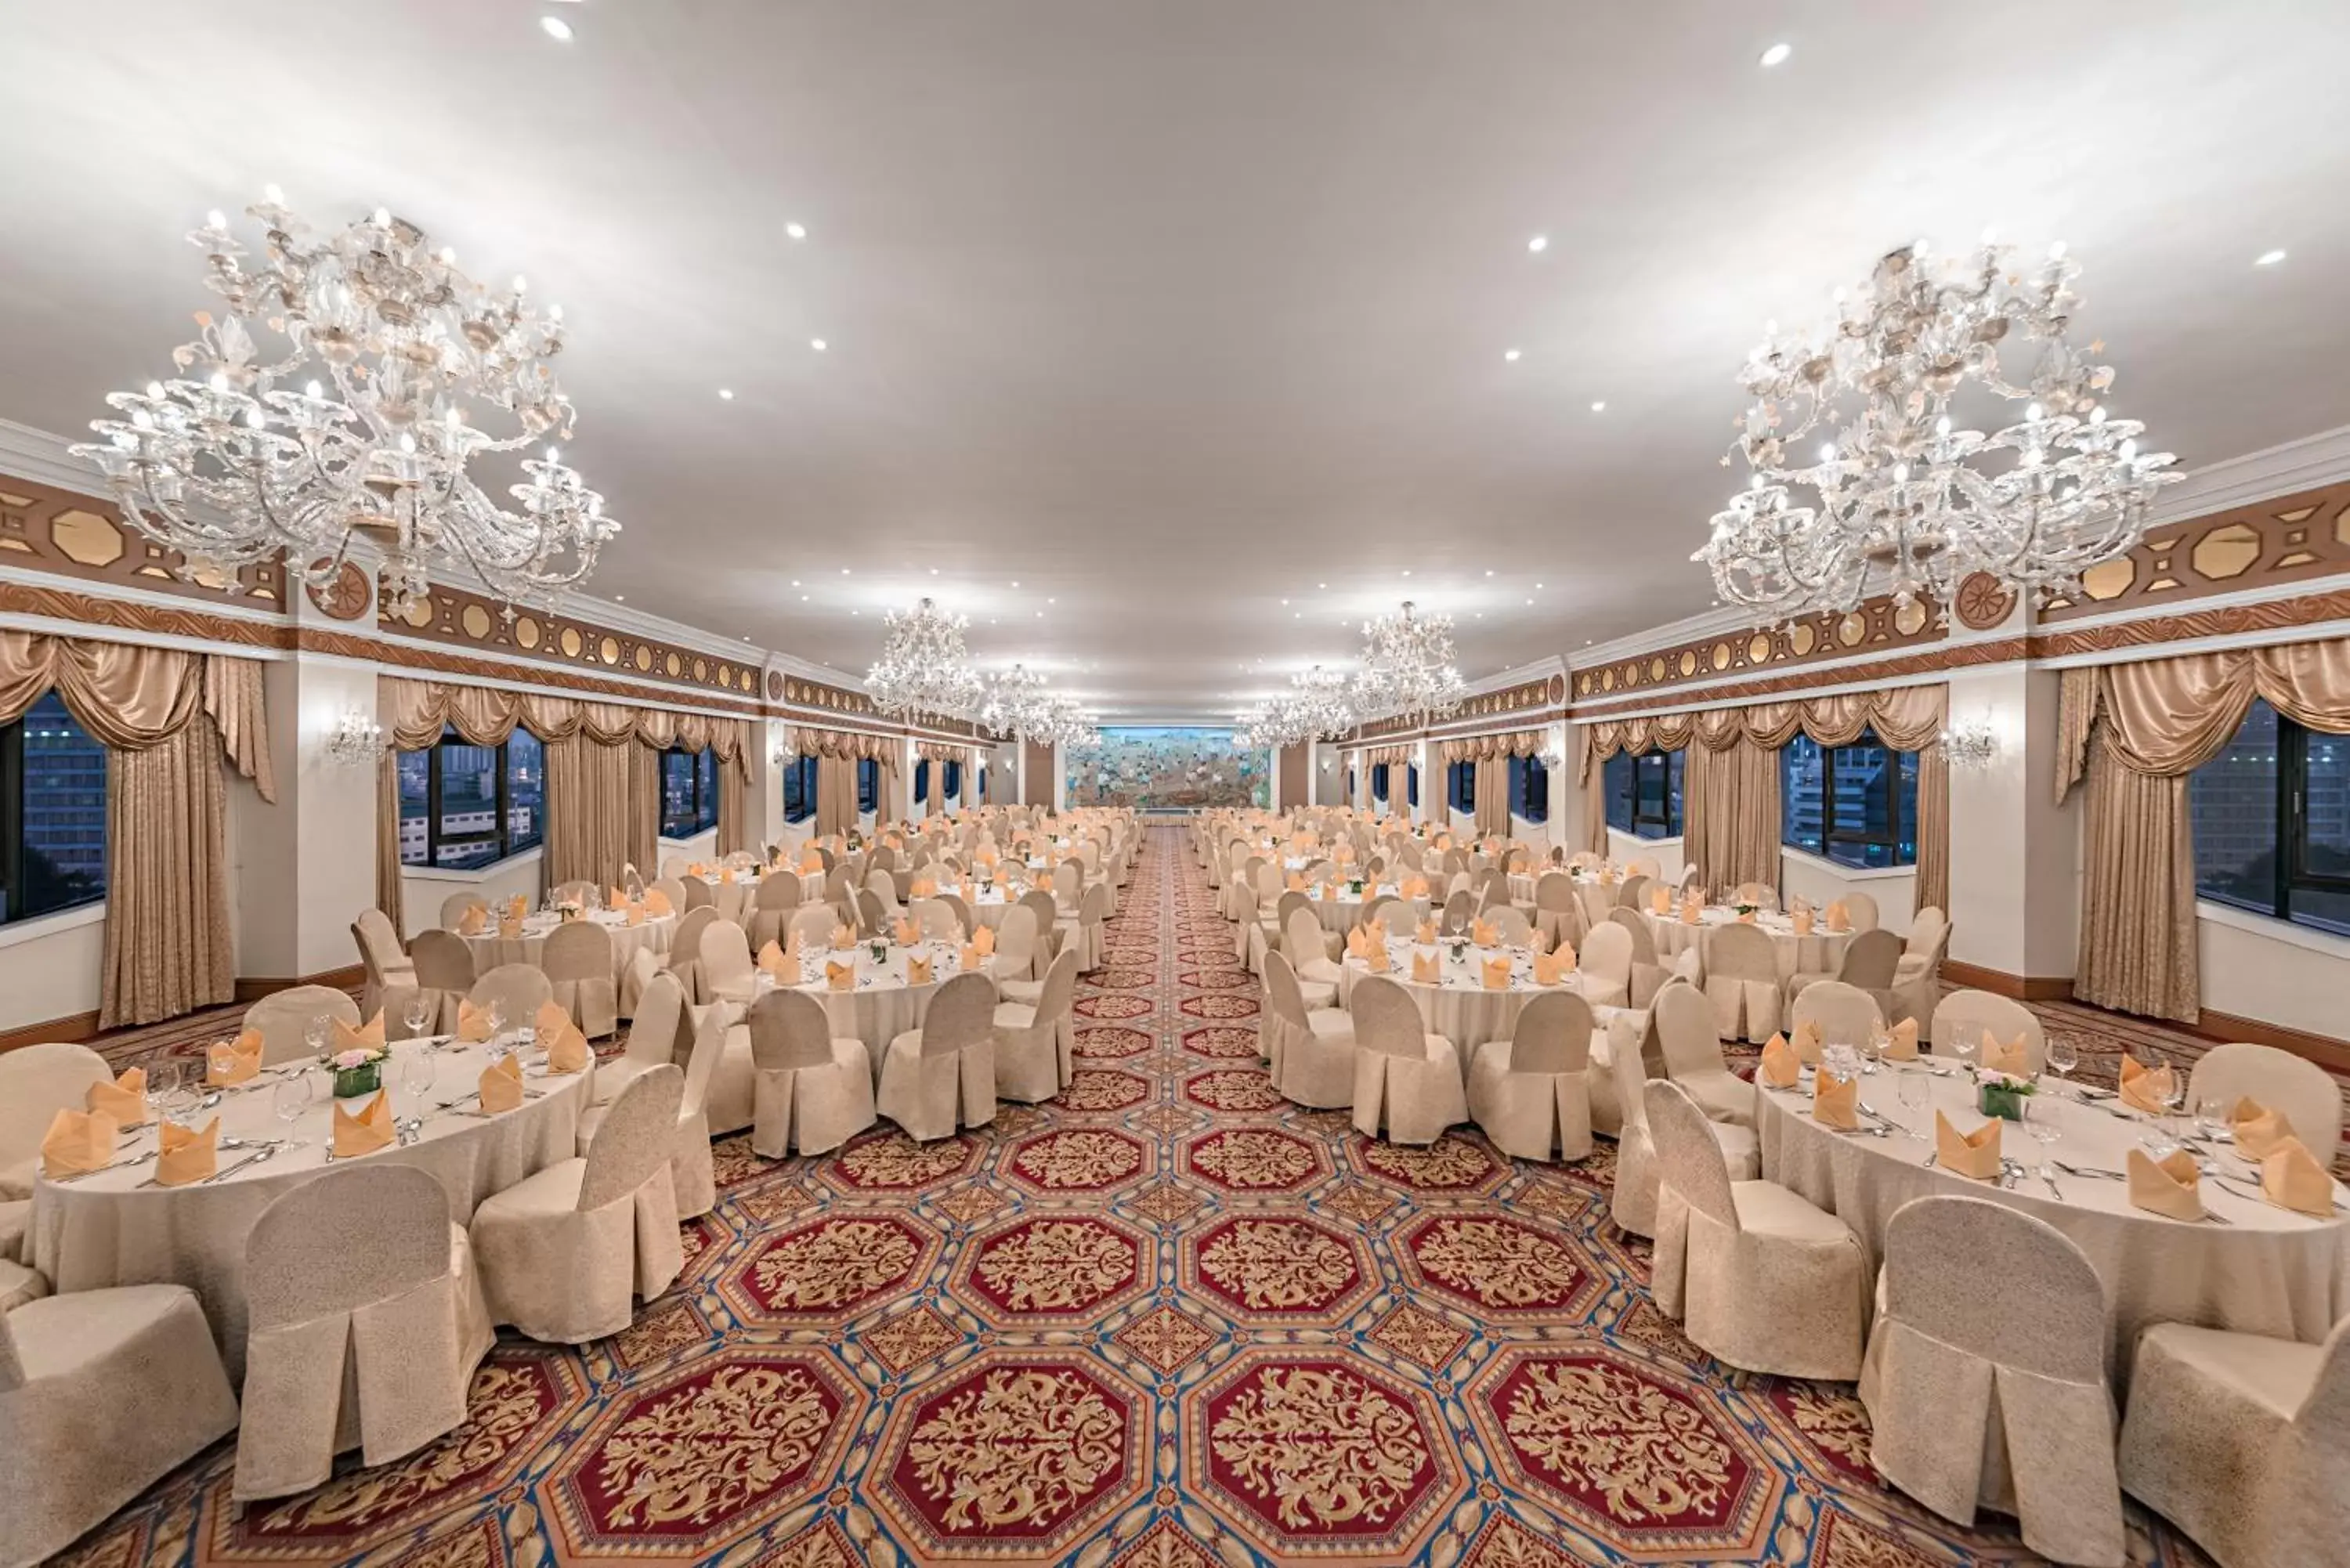 Banquet/Function facilities, Banquet Facilities in Manila Prince Hotel